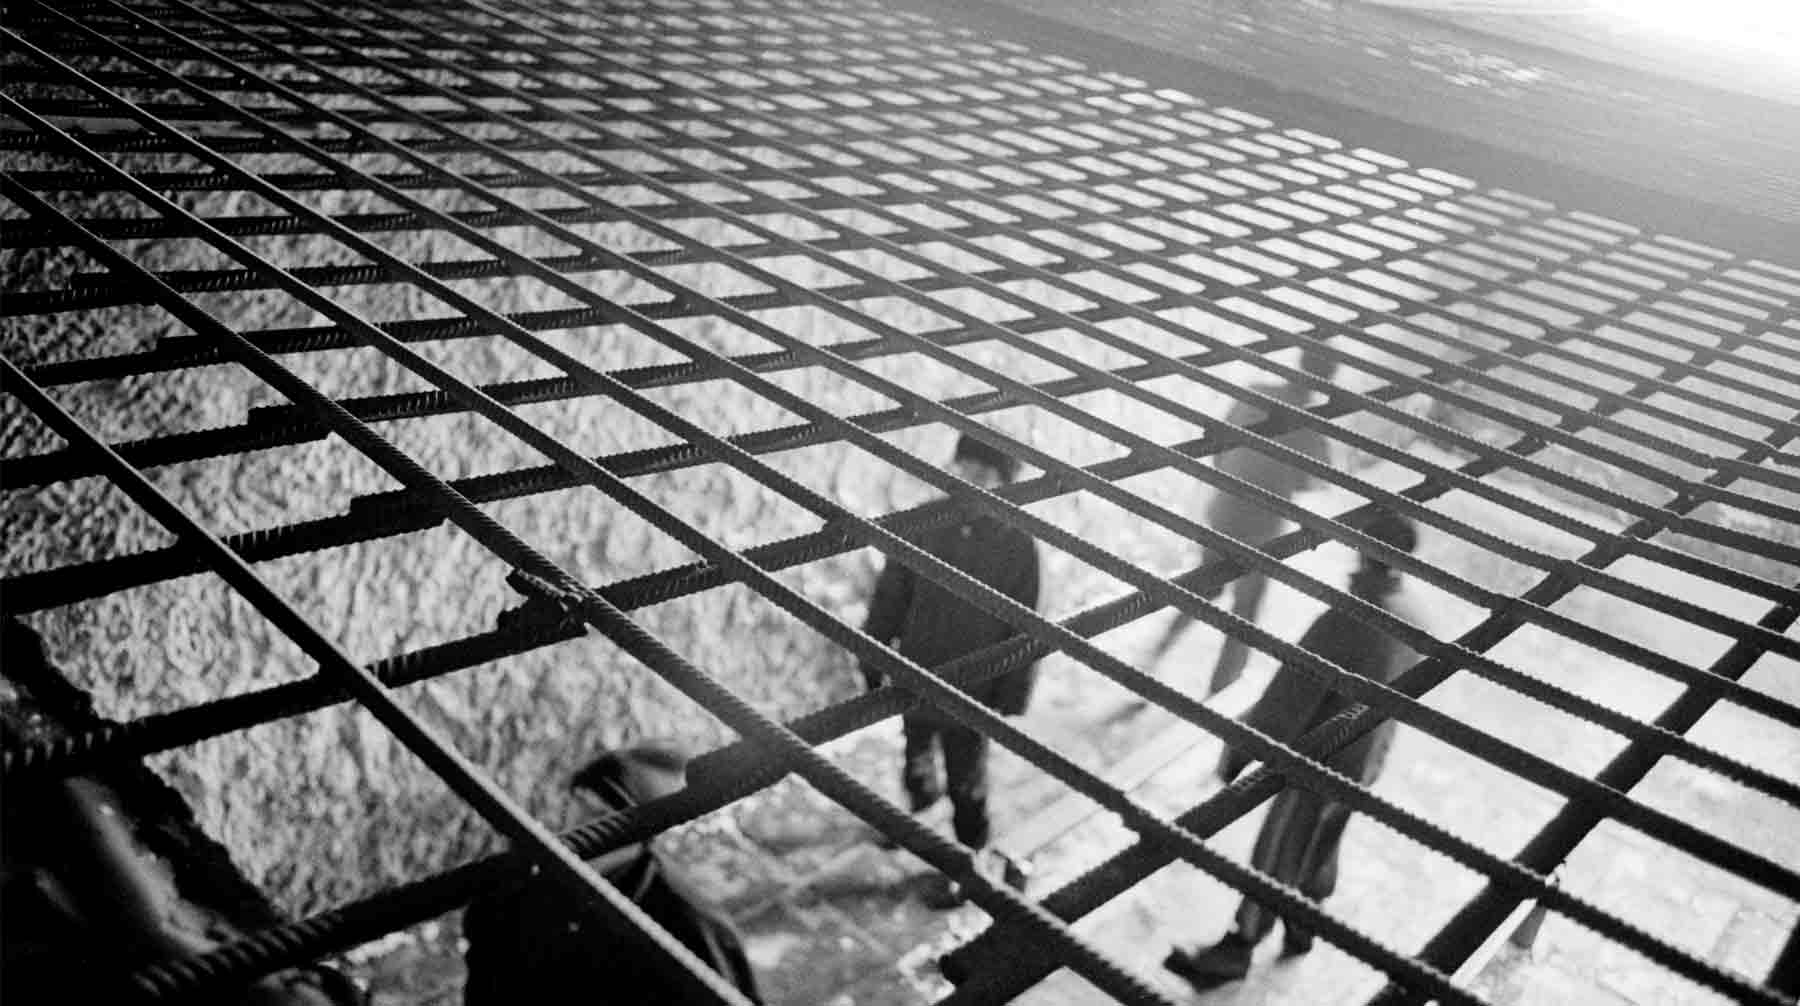 Освобождение заключенных свидетельствует об улучшении отношений между странами, считает Валентин Рыбин Фото: © GLOBAL LOOK Press / Aleksandr Schemlyaev